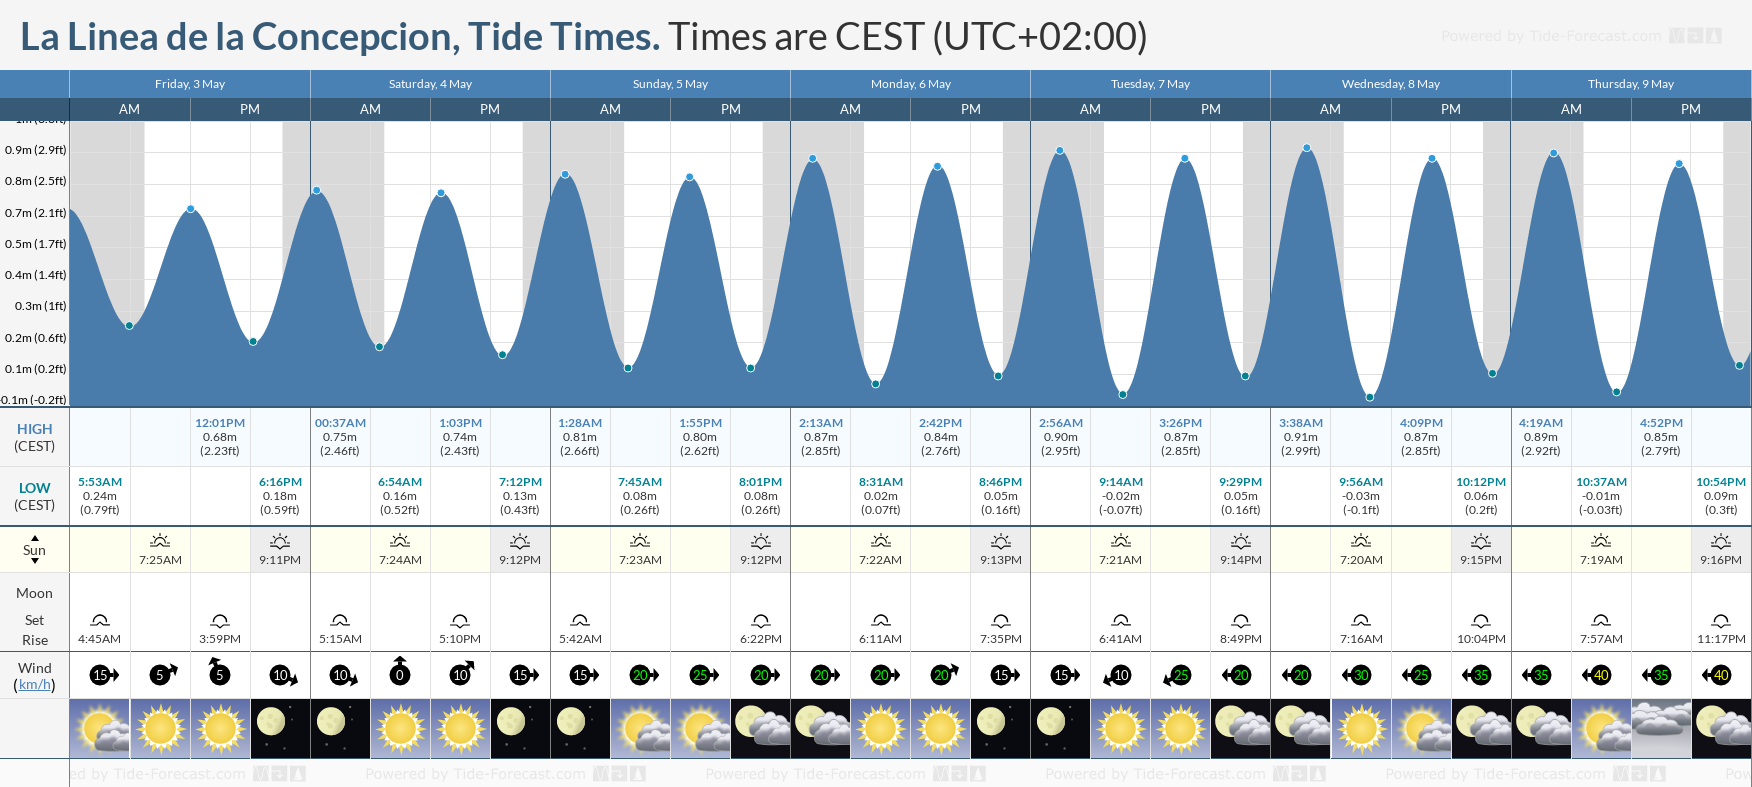 La Linea de la Concepcion Tide Chart including high and low tide tide times for the next 7 days